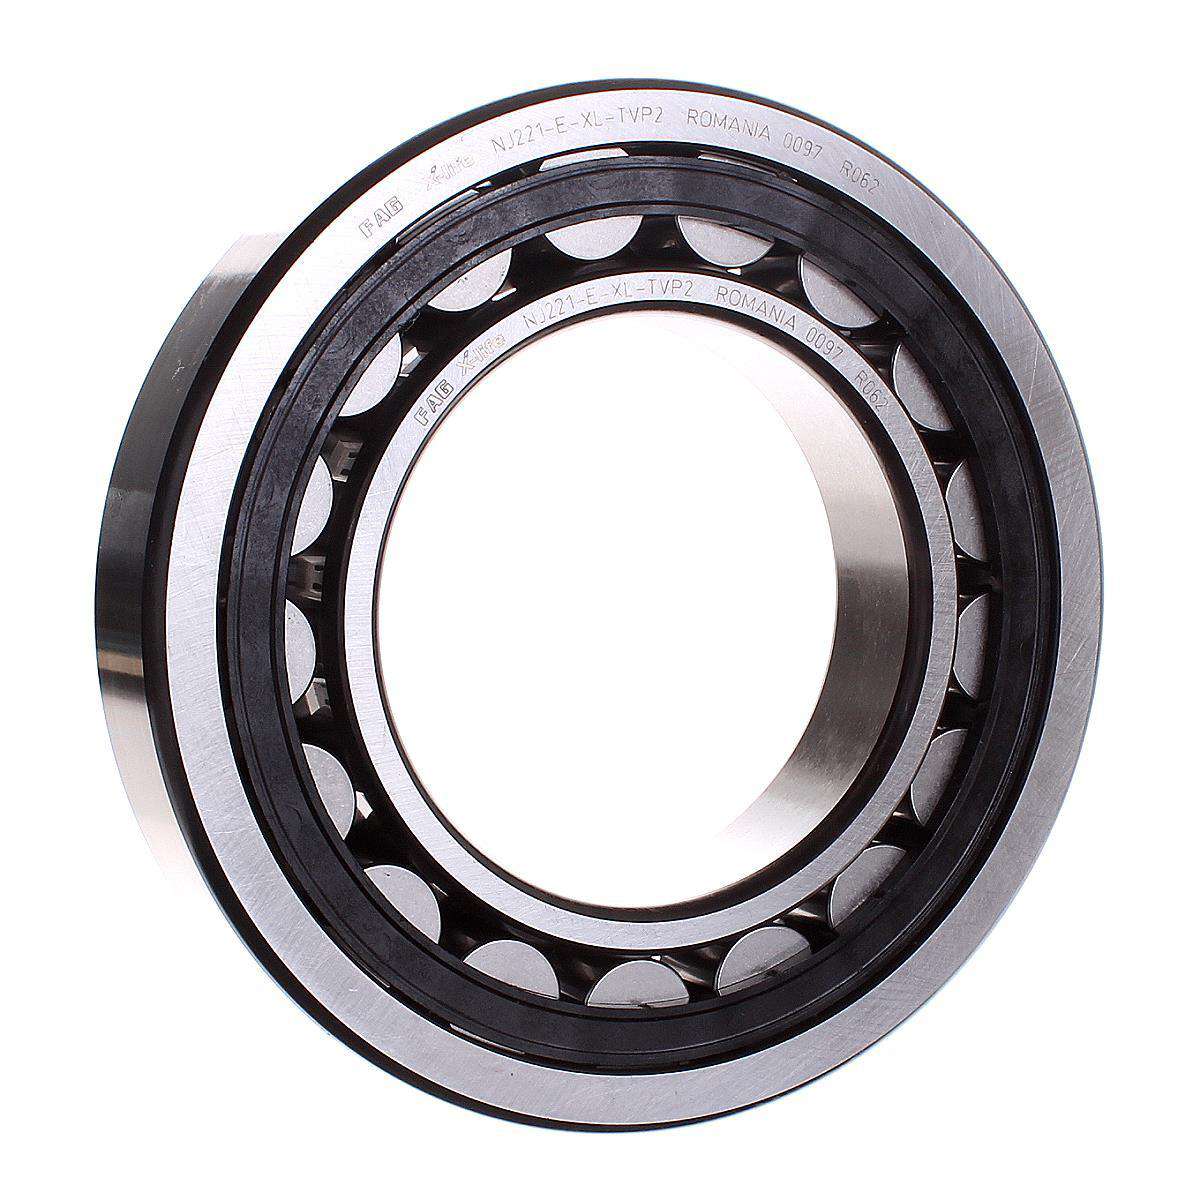 NU326-E-TVP3-C3 NKE Cylindrical roller bearing 130x280x58 NKE